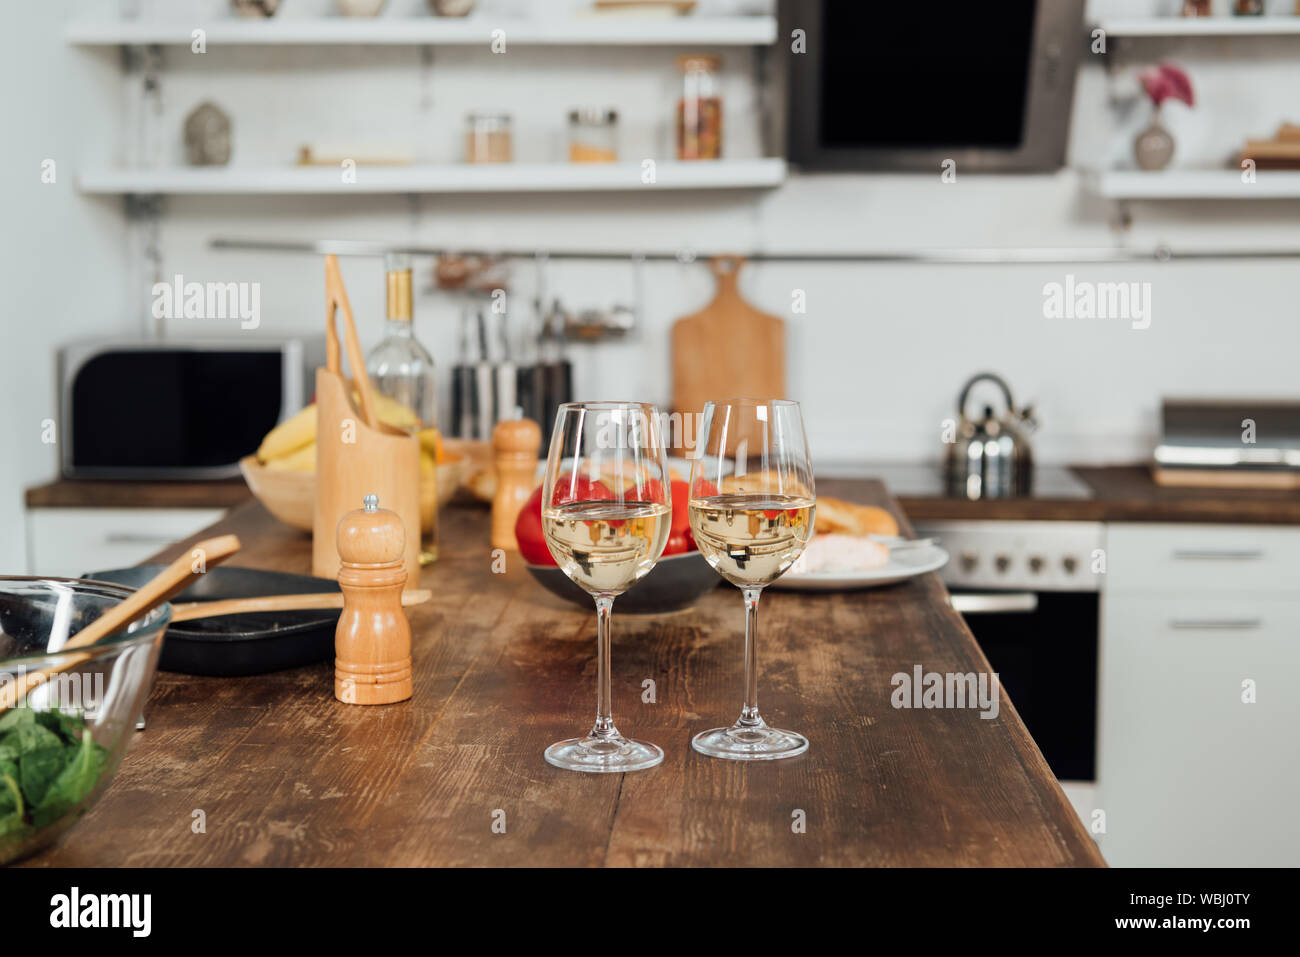 Verres à vin avec du vin, de la nourriture et d'ustensiles de cuisine sur la table dans la cuisine Banque D'Images